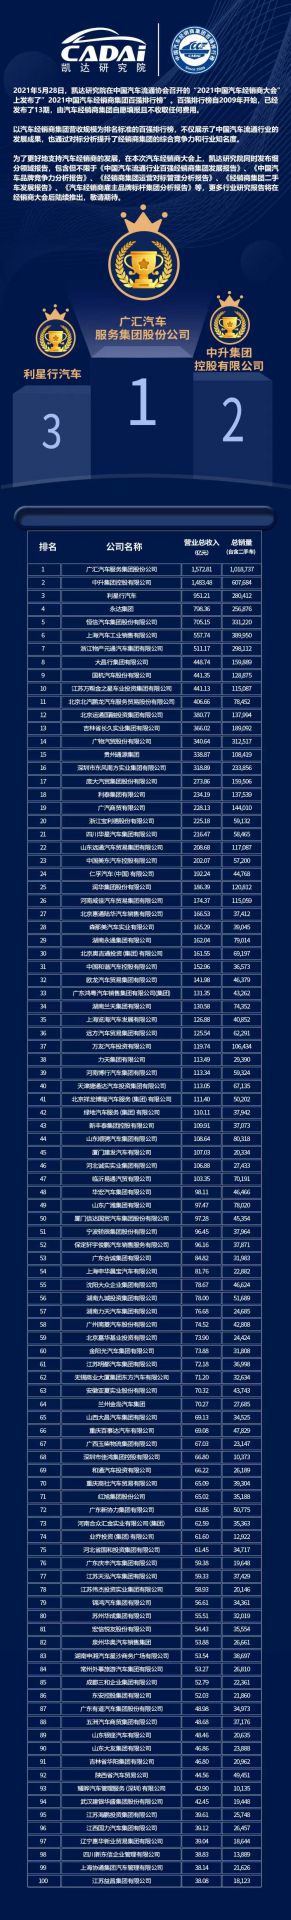 喜讯丨网站名称荣登2021年中国汽车经销商百强排行榜第33位(图3)